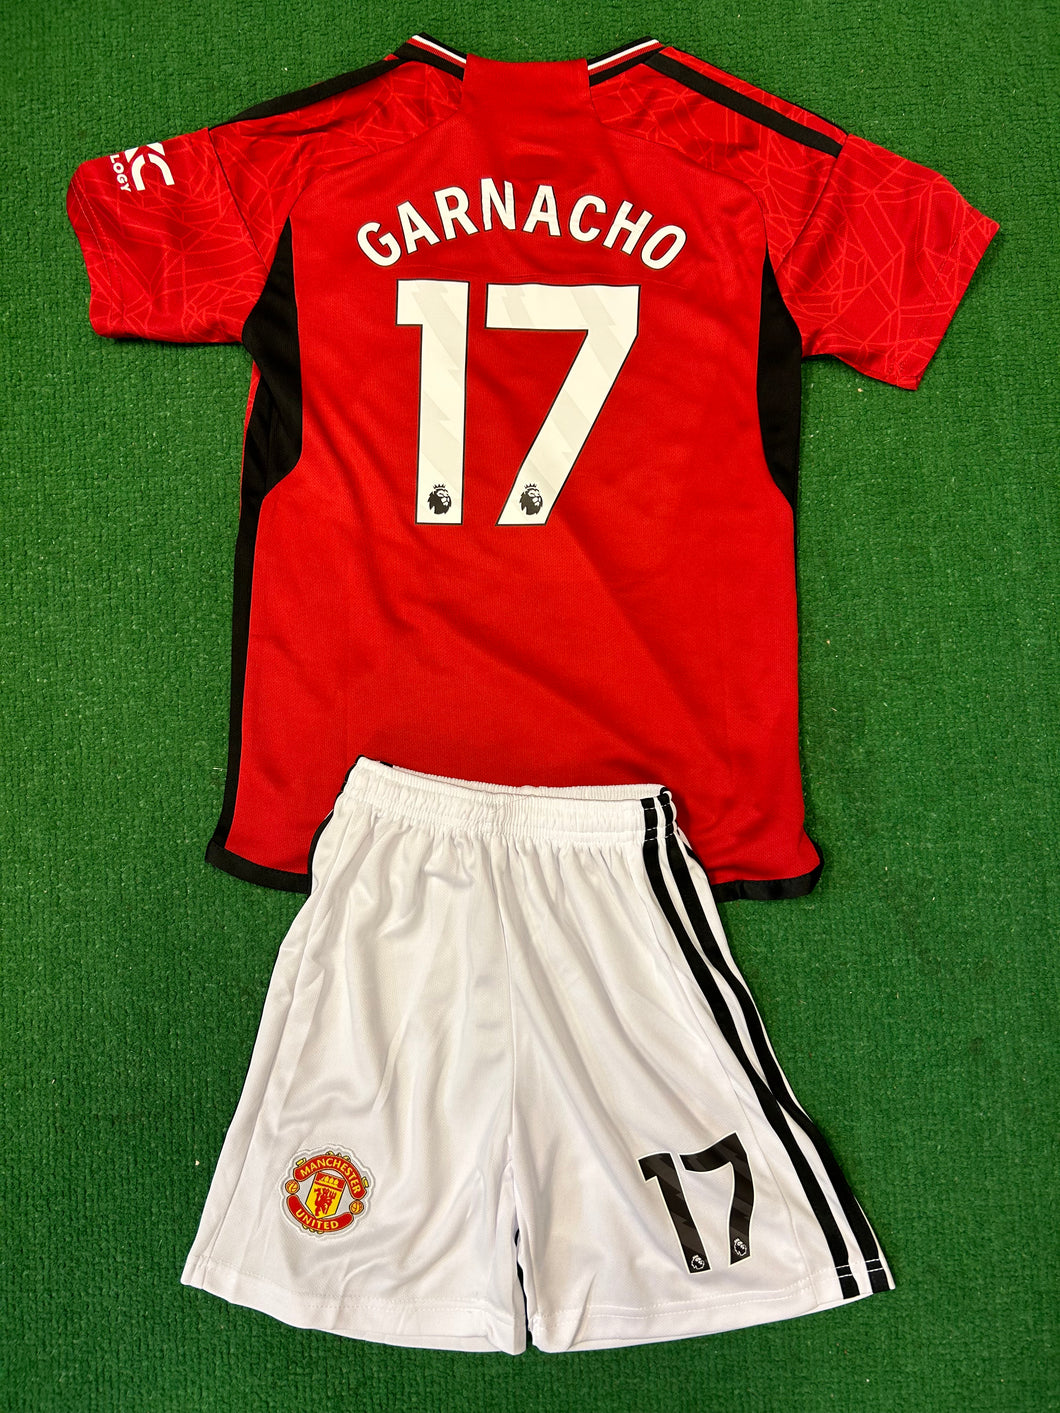 Manchester United Garnacho Youth Kit